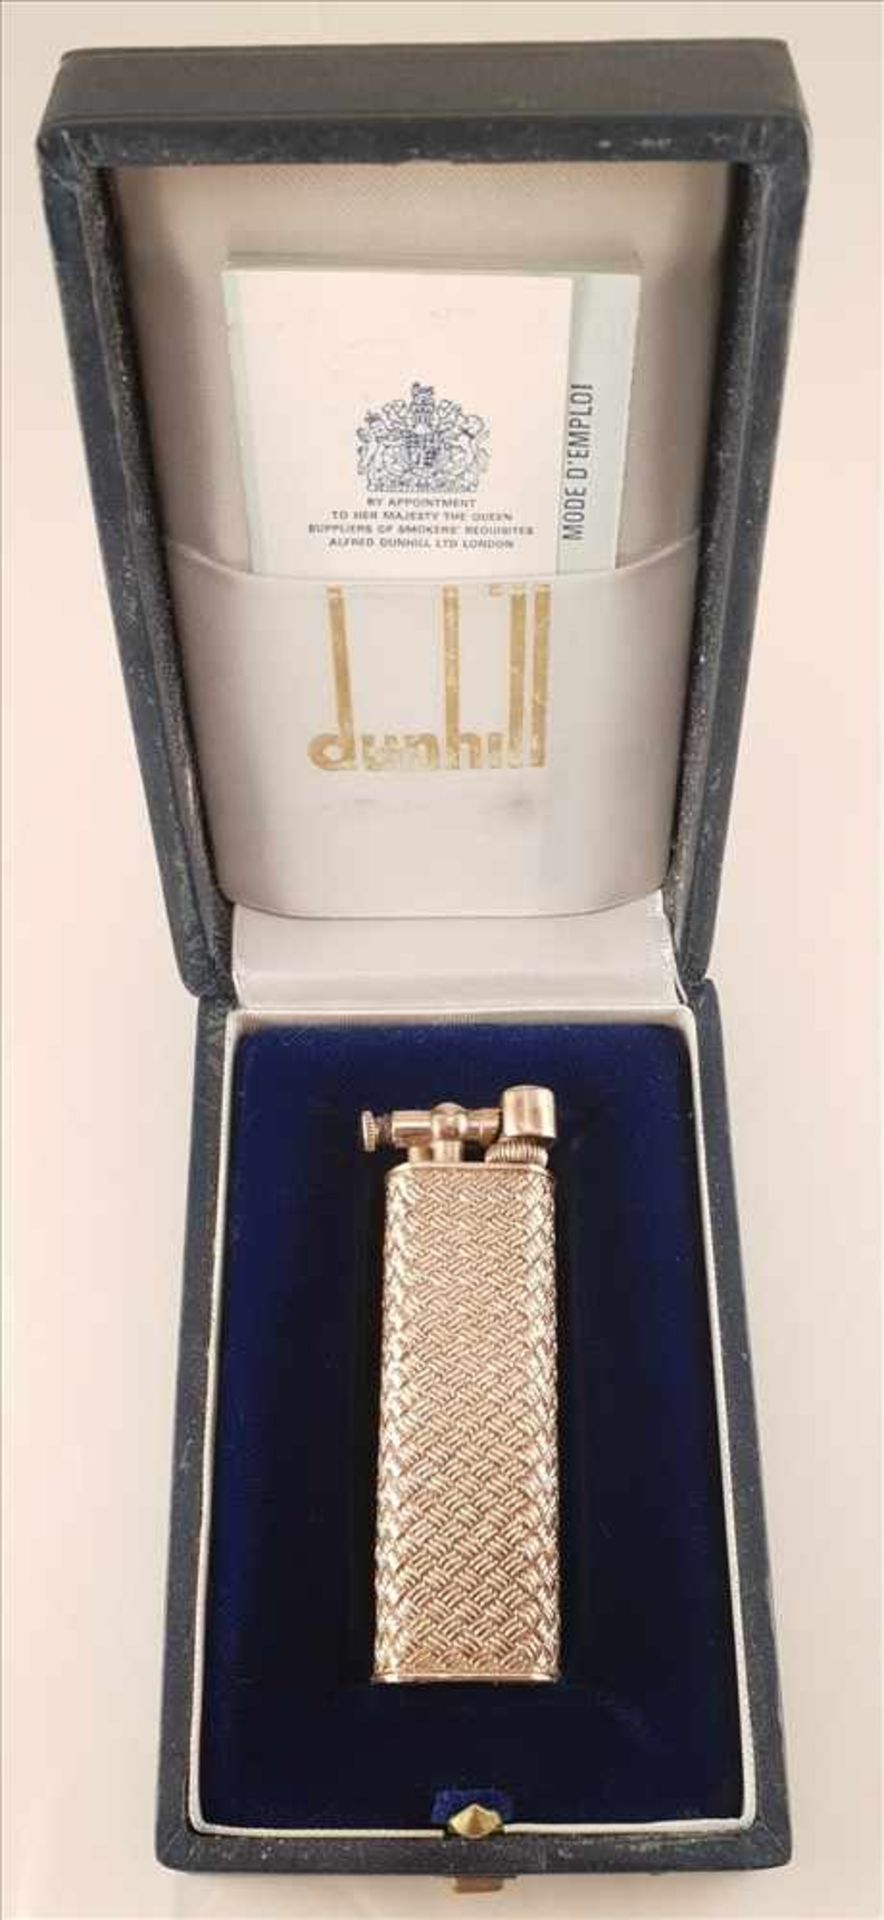 Dunhill Feuerzeug, Silber vergoldet 800, Frankreich 1.Hälfte 20.Jhd, Funktionstüchtig, keine